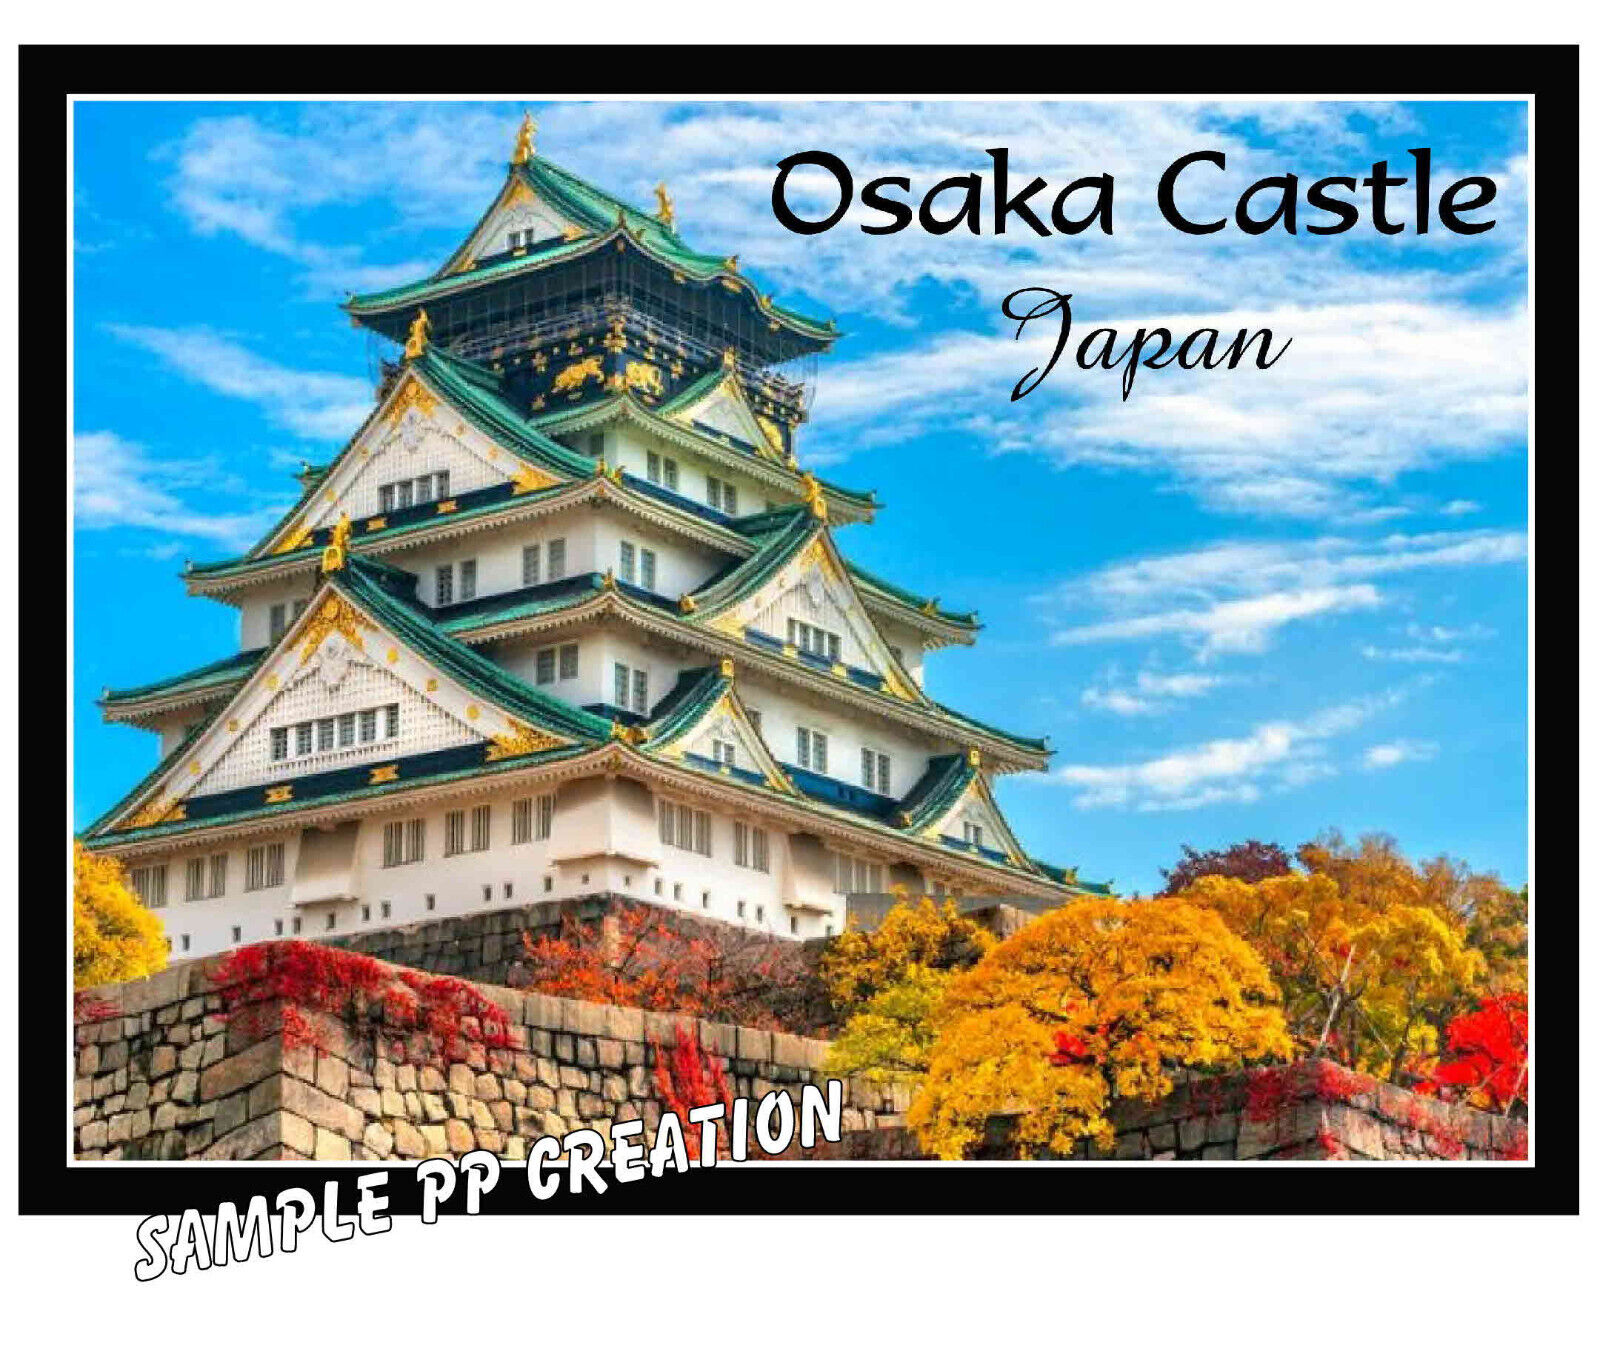 OSAKA CASTLE, JAPAN PHOTO FRIDGE MAGNET 4 X 3 inches TRAVEL